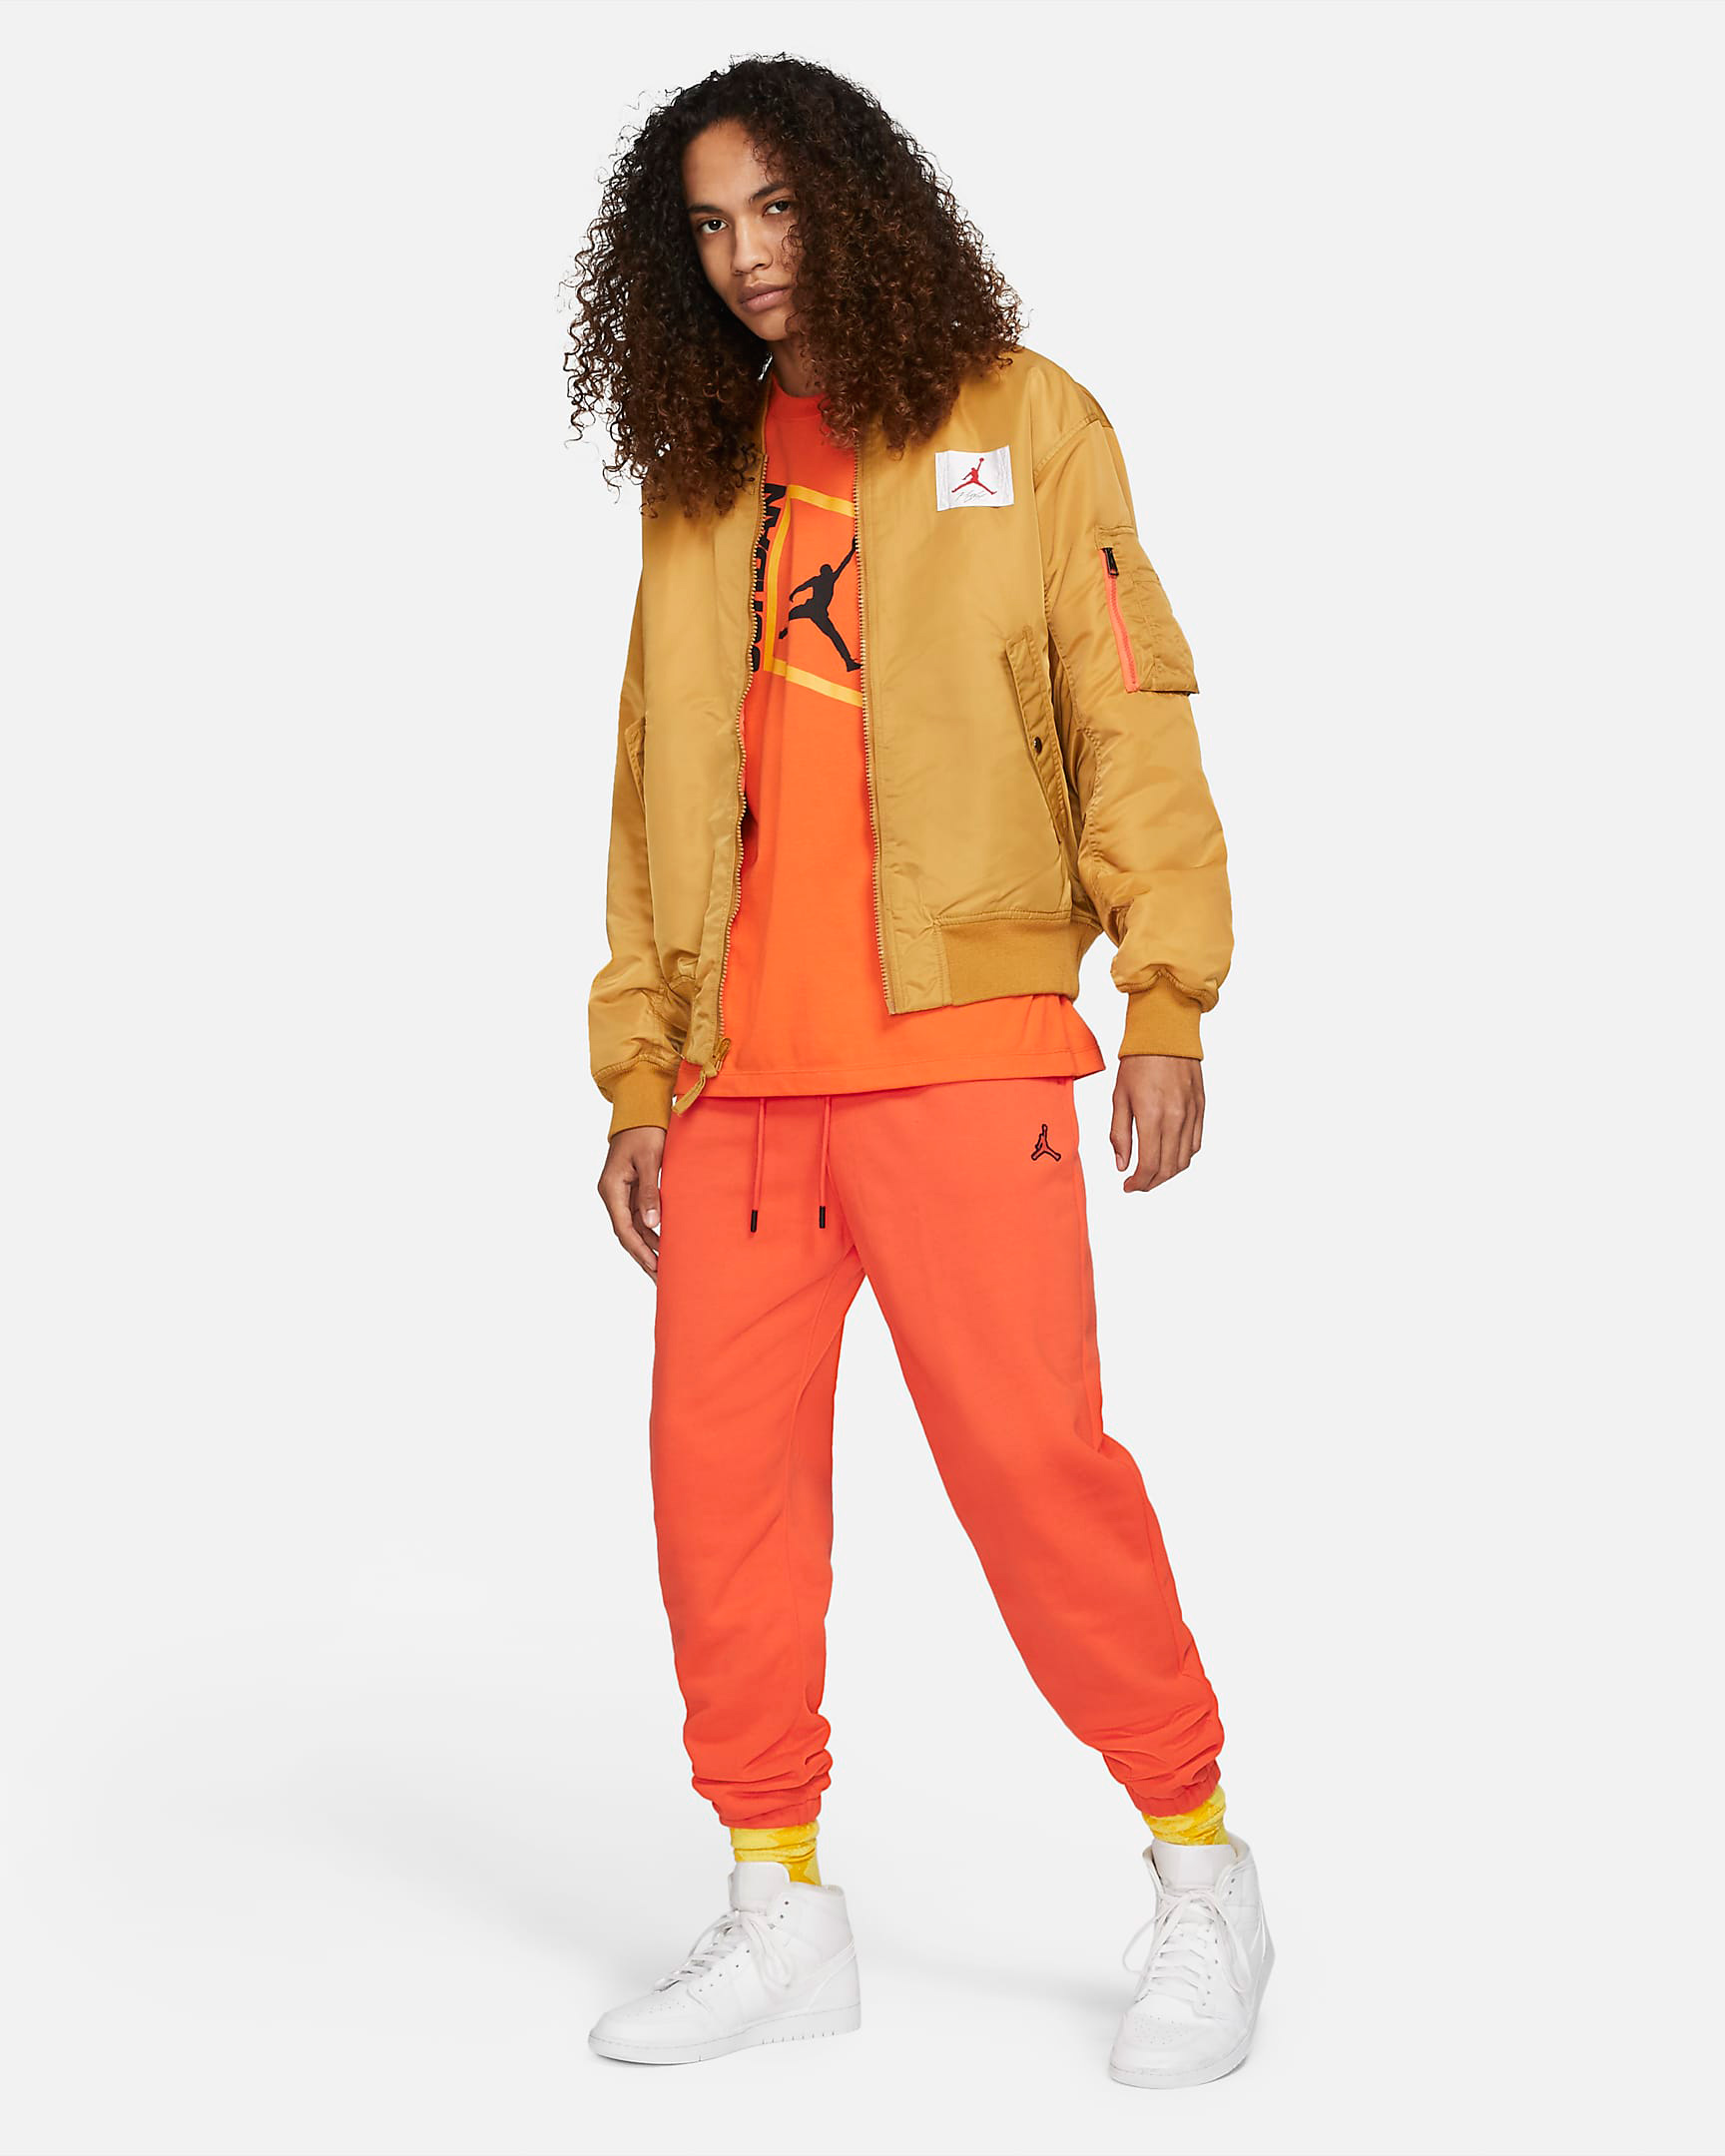 jordan-orange-shirt-pants-jacket-outfit